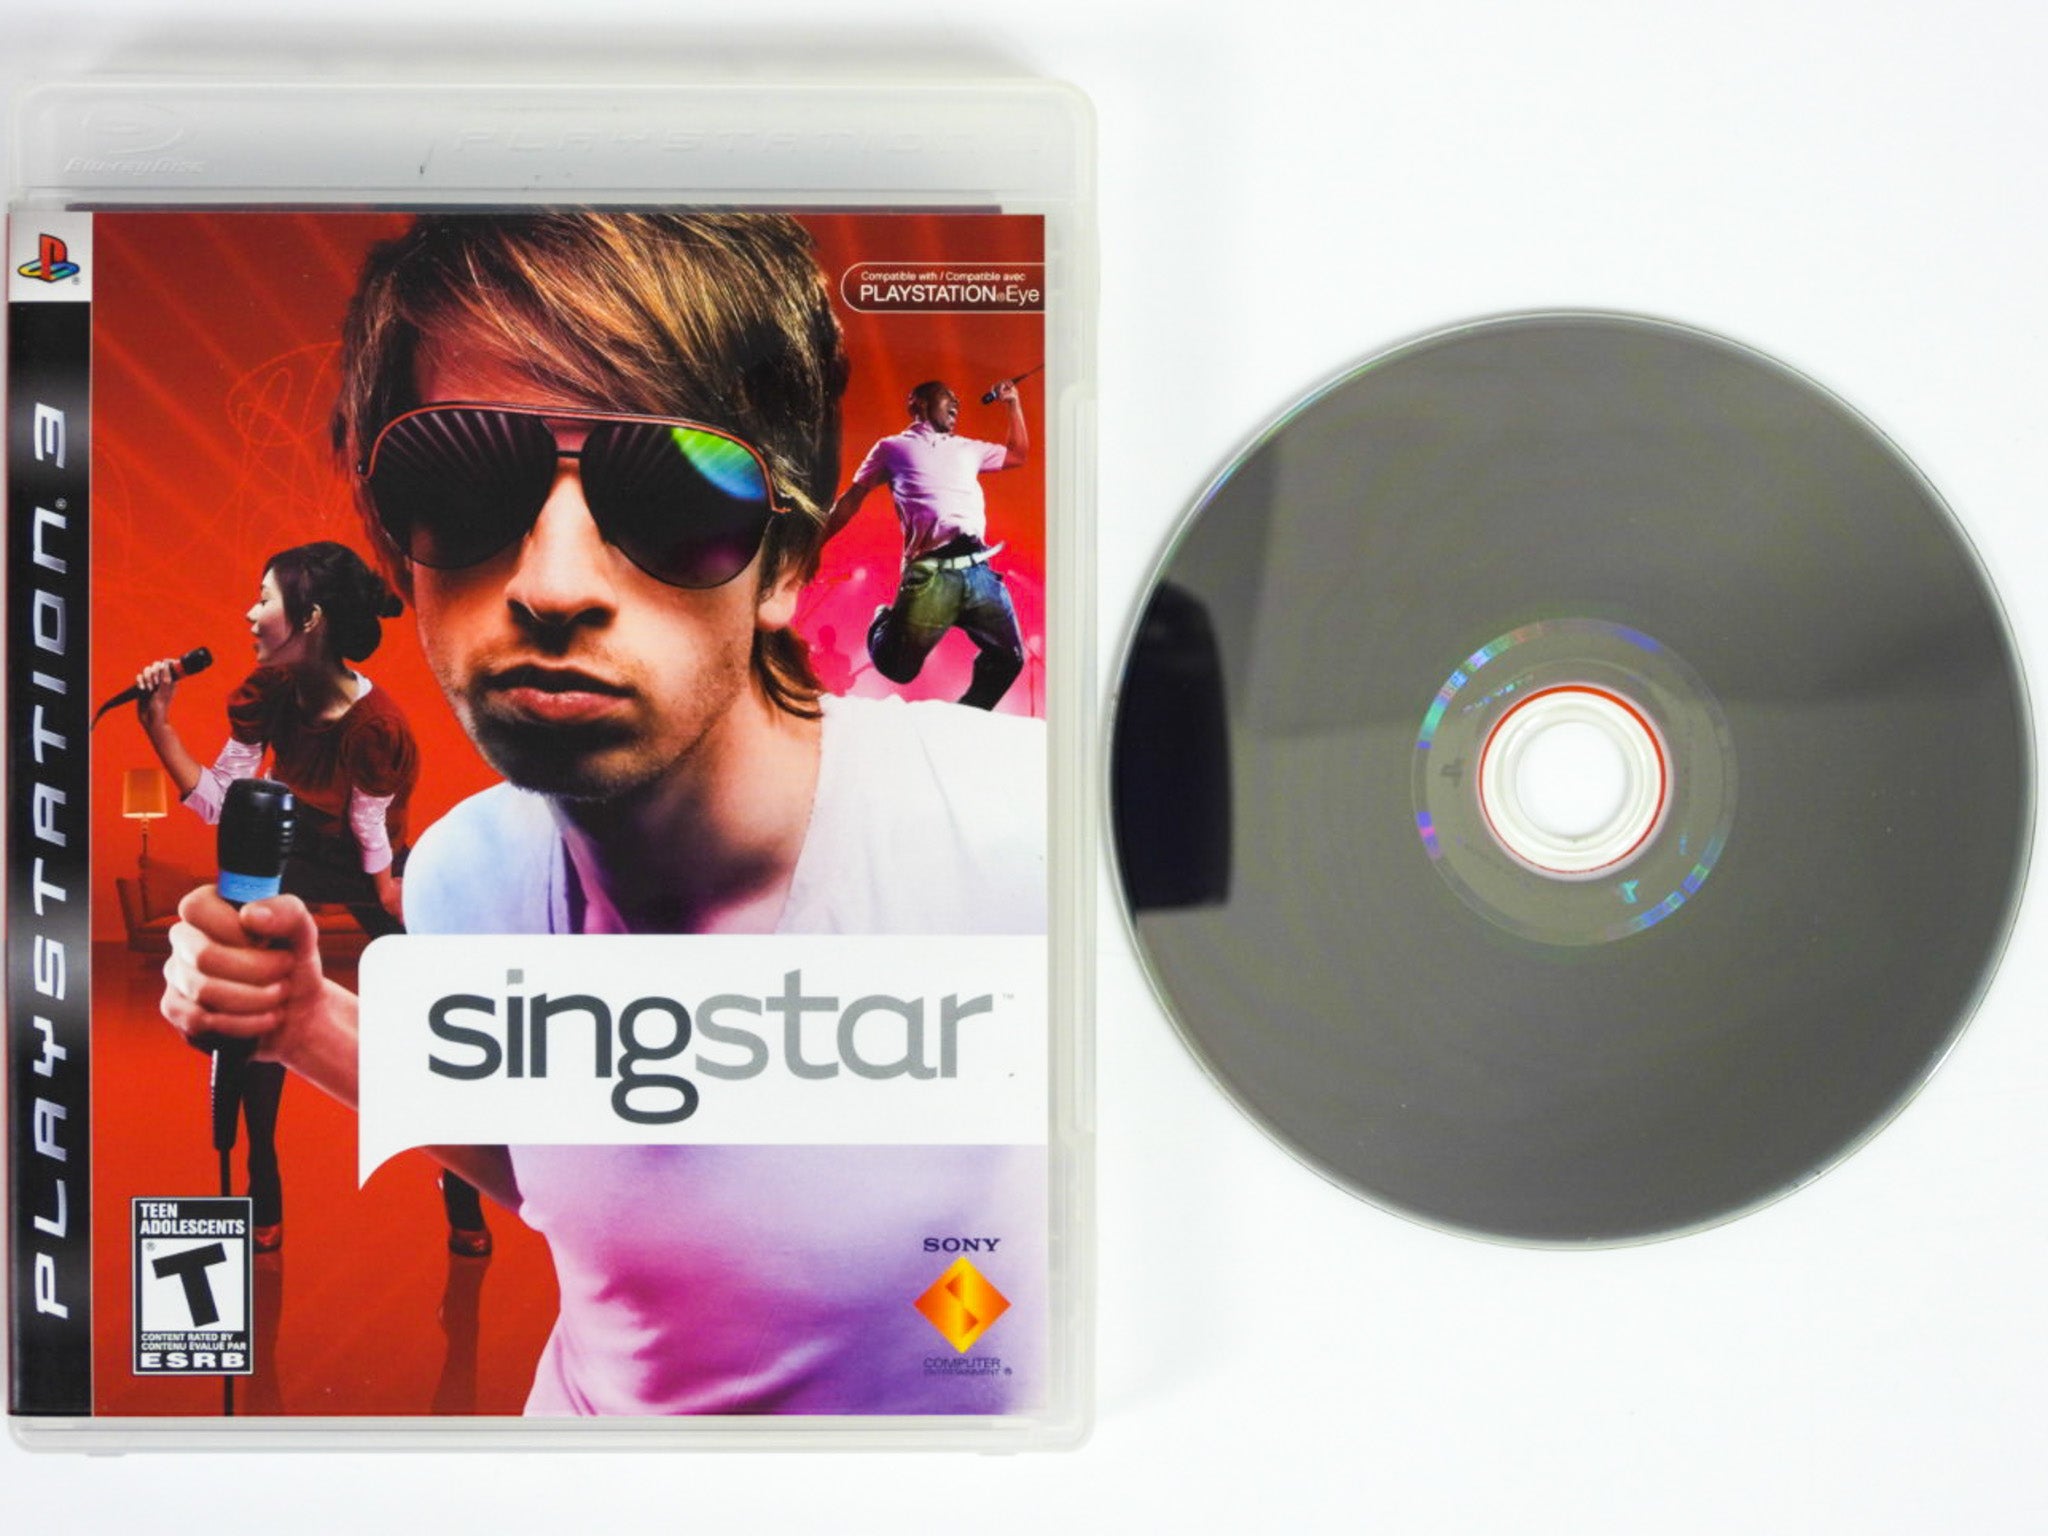 SingStar (Playstation 3 / PS3) – RetroMTL